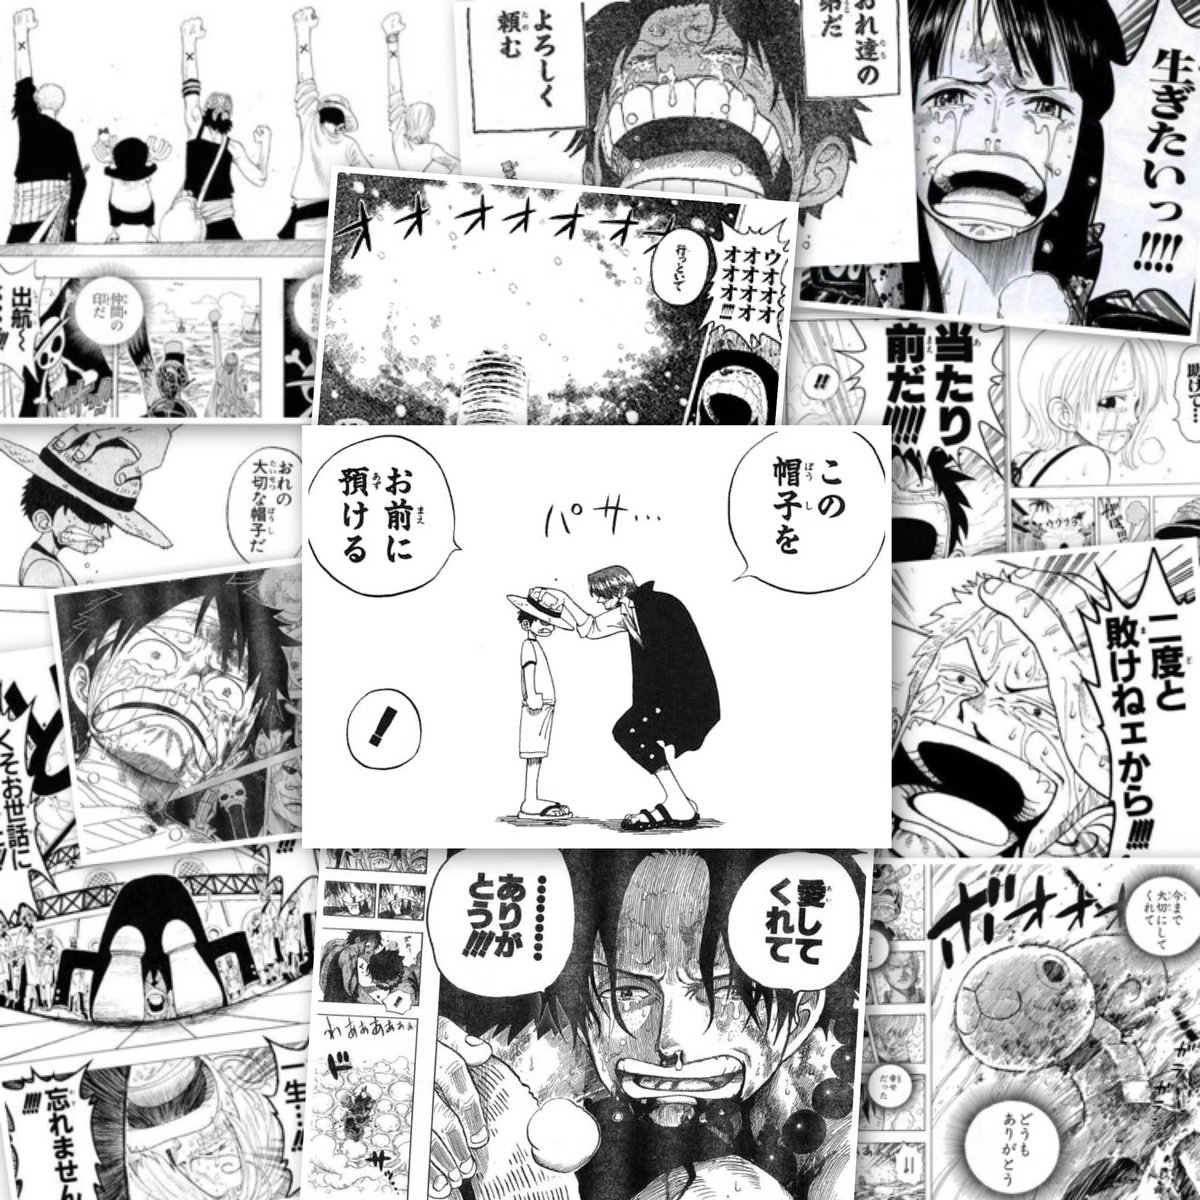 Hiromu 今までたくさんの感動をありがとう One Pieceはちっちゃい頃から読んでいる 1番好きな漫画です もう少し なんて言わないでもっともっと連載してほしい これからも期待してます Onepiece ワンピース周年 周年おめでとう 尾田っちありがとう